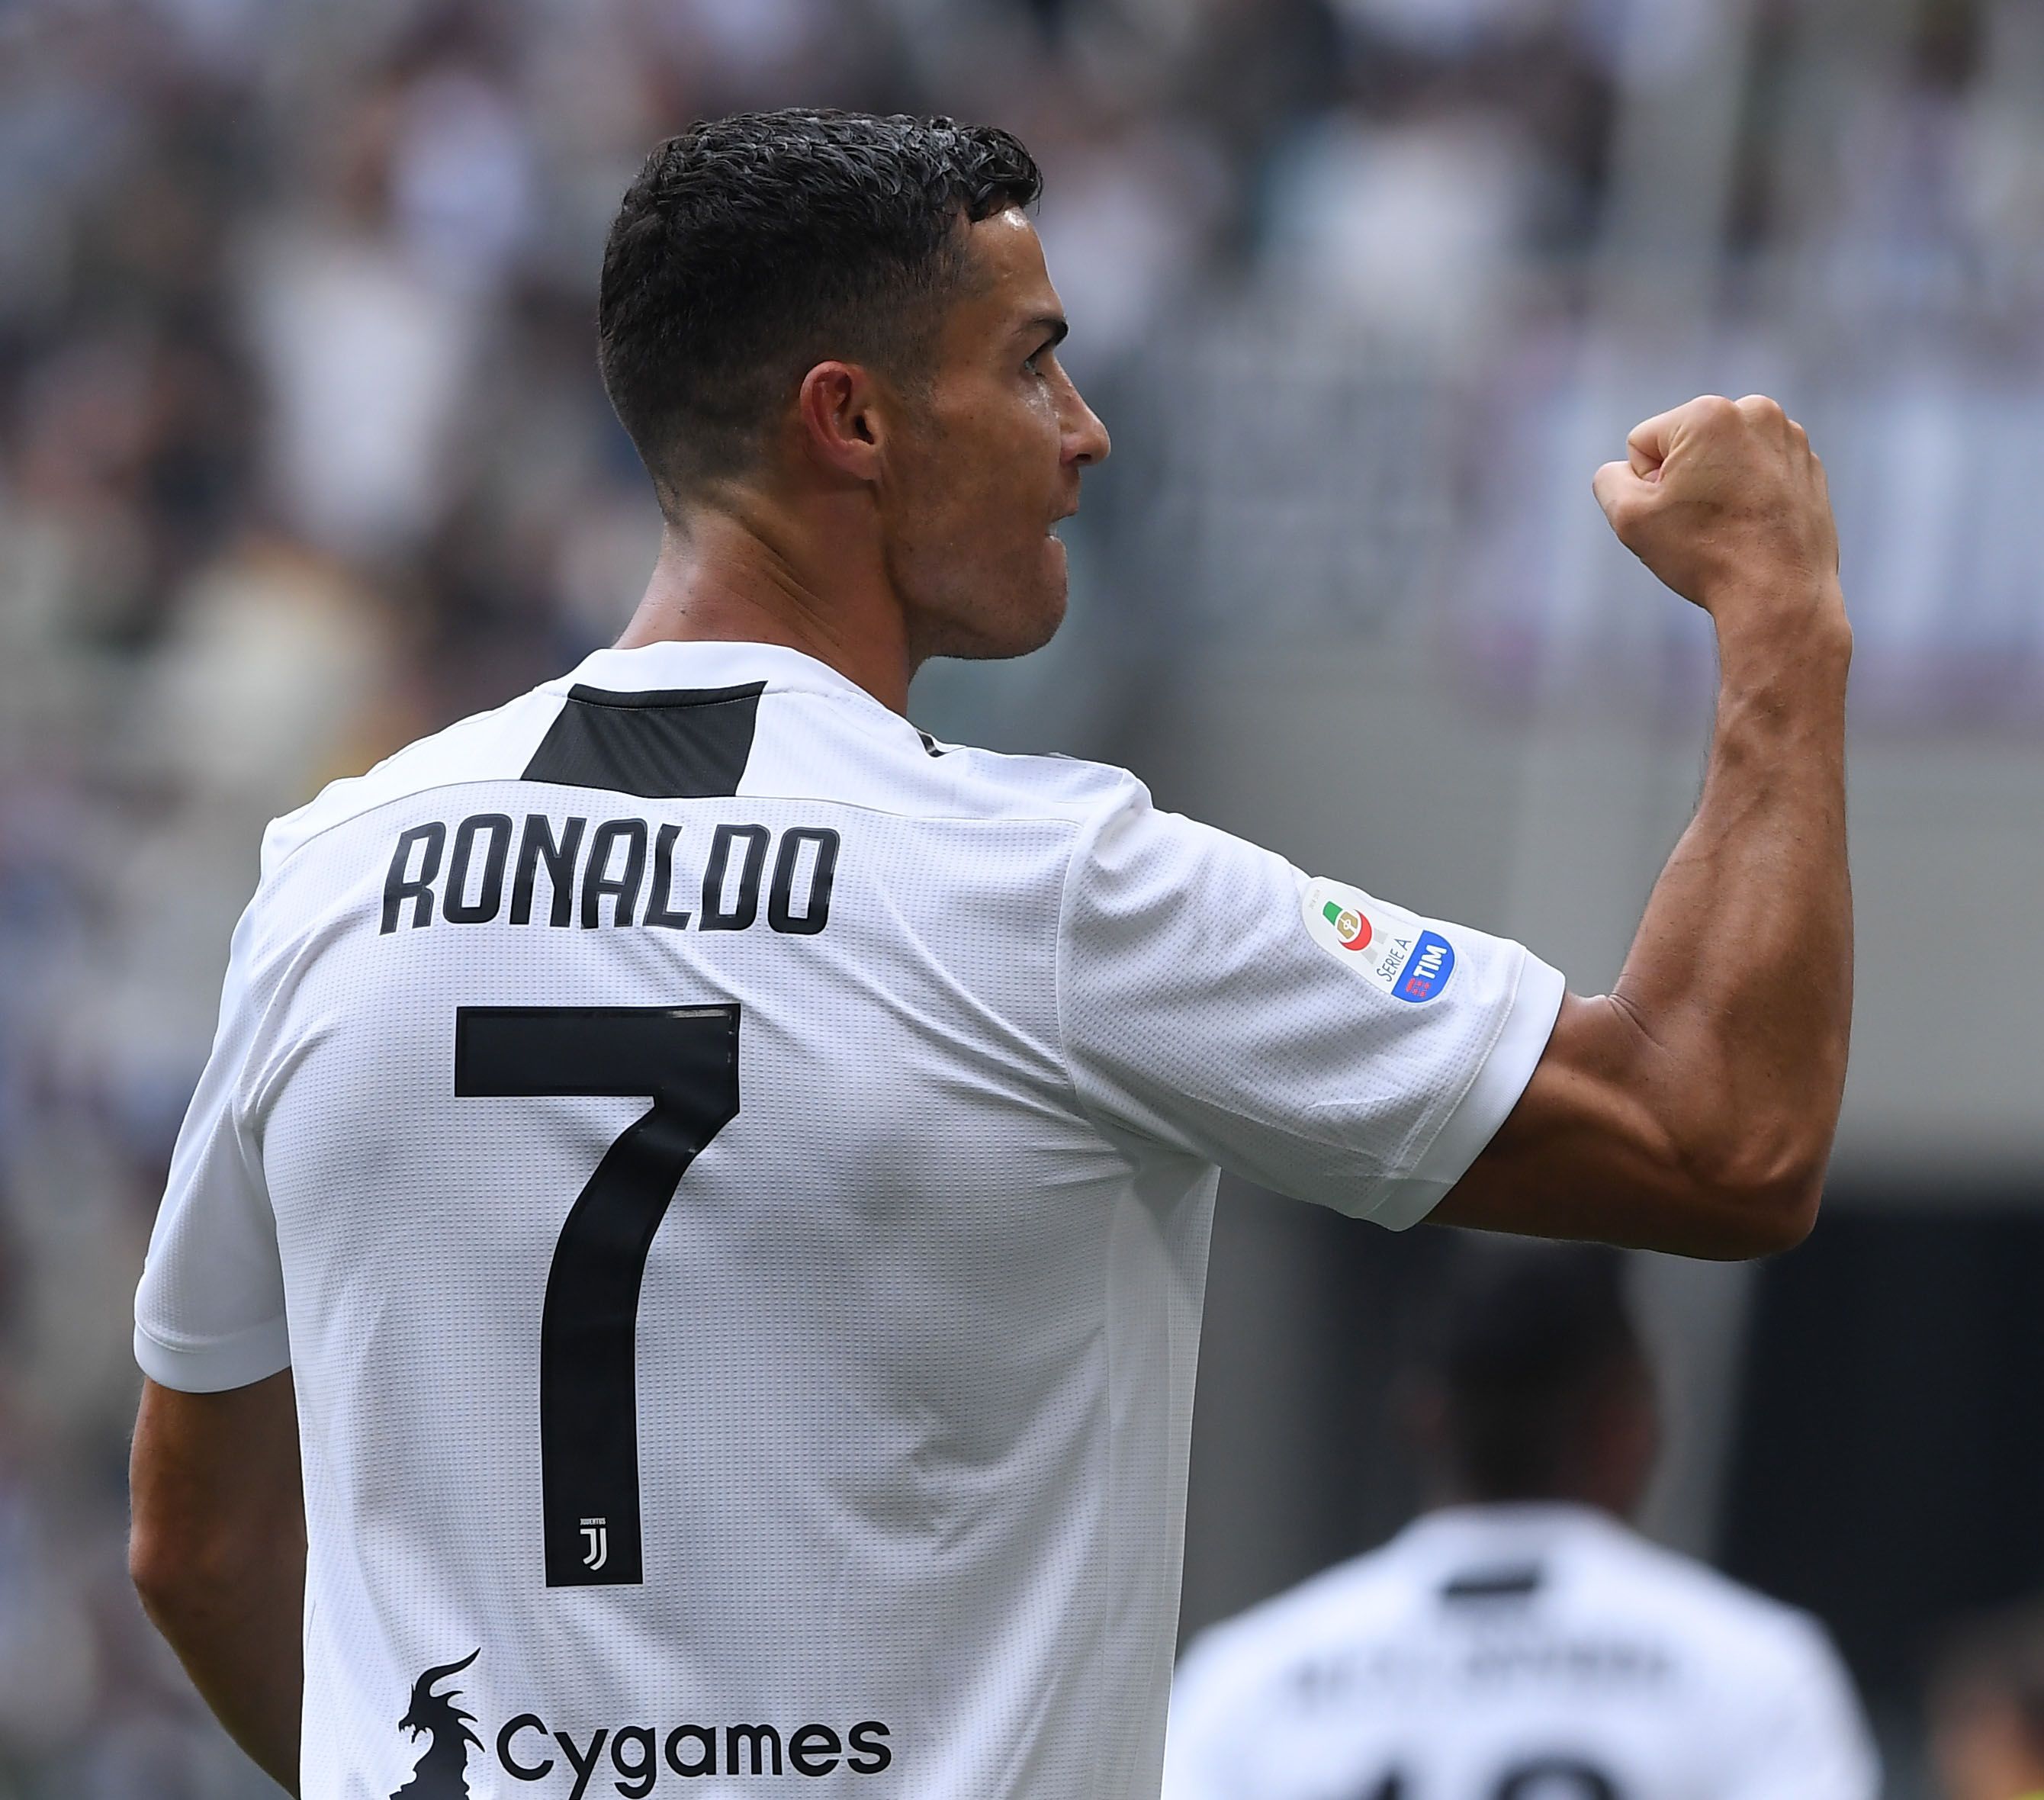 Elképzelhető, hogy jövőre már nem fekete-fehér csíkos, hanem kék mezben fogja rúgni a gólokat Ronaldo /Fotó: Northfoto/